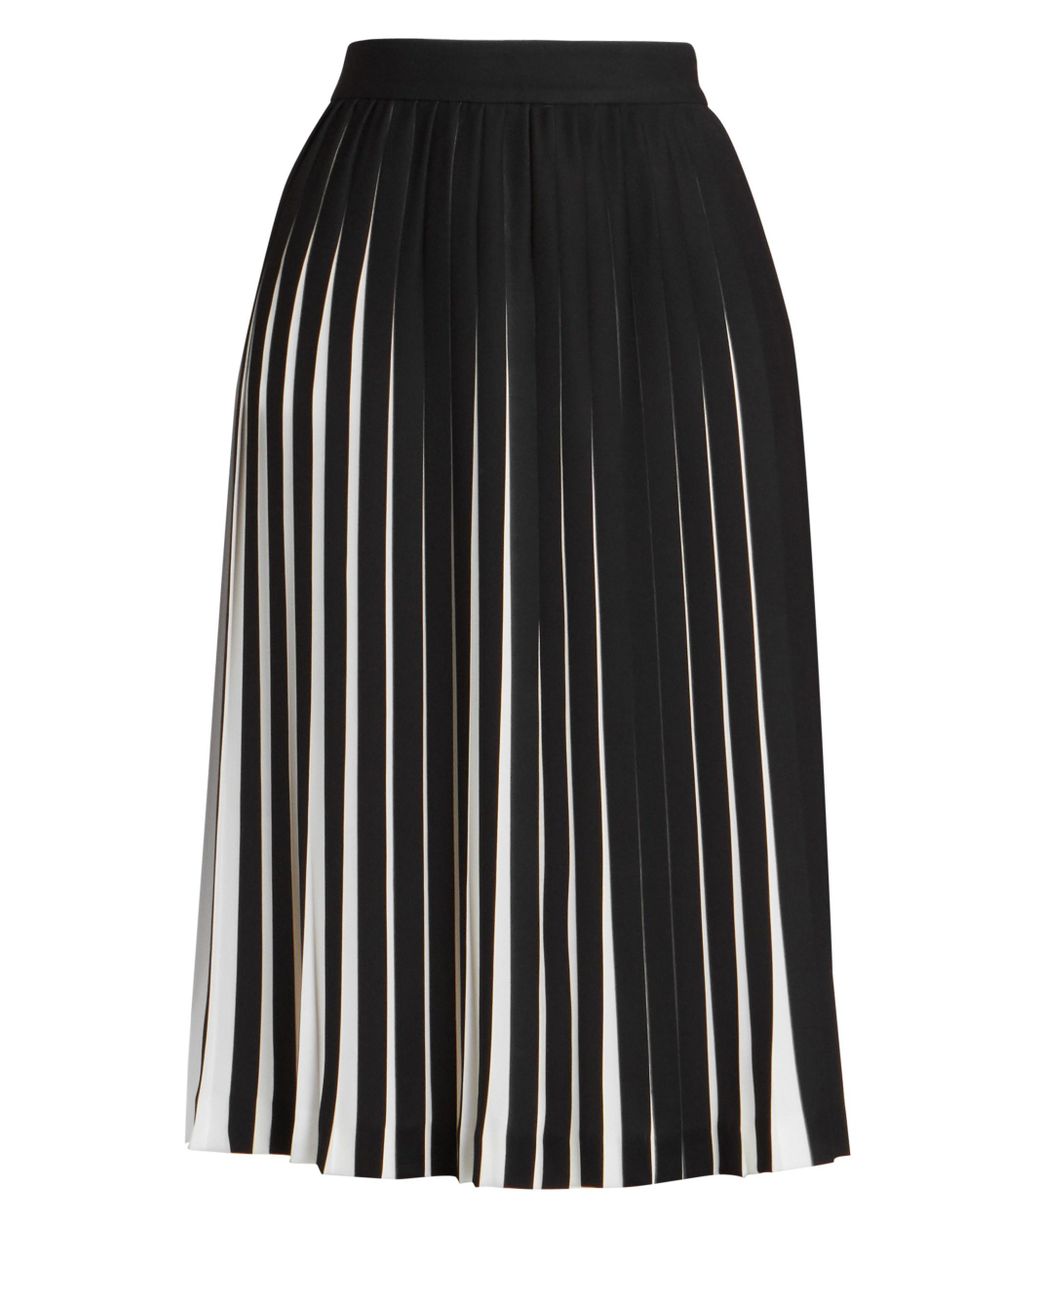 Maison Margiela Pleated Skirt in Black | Lyst